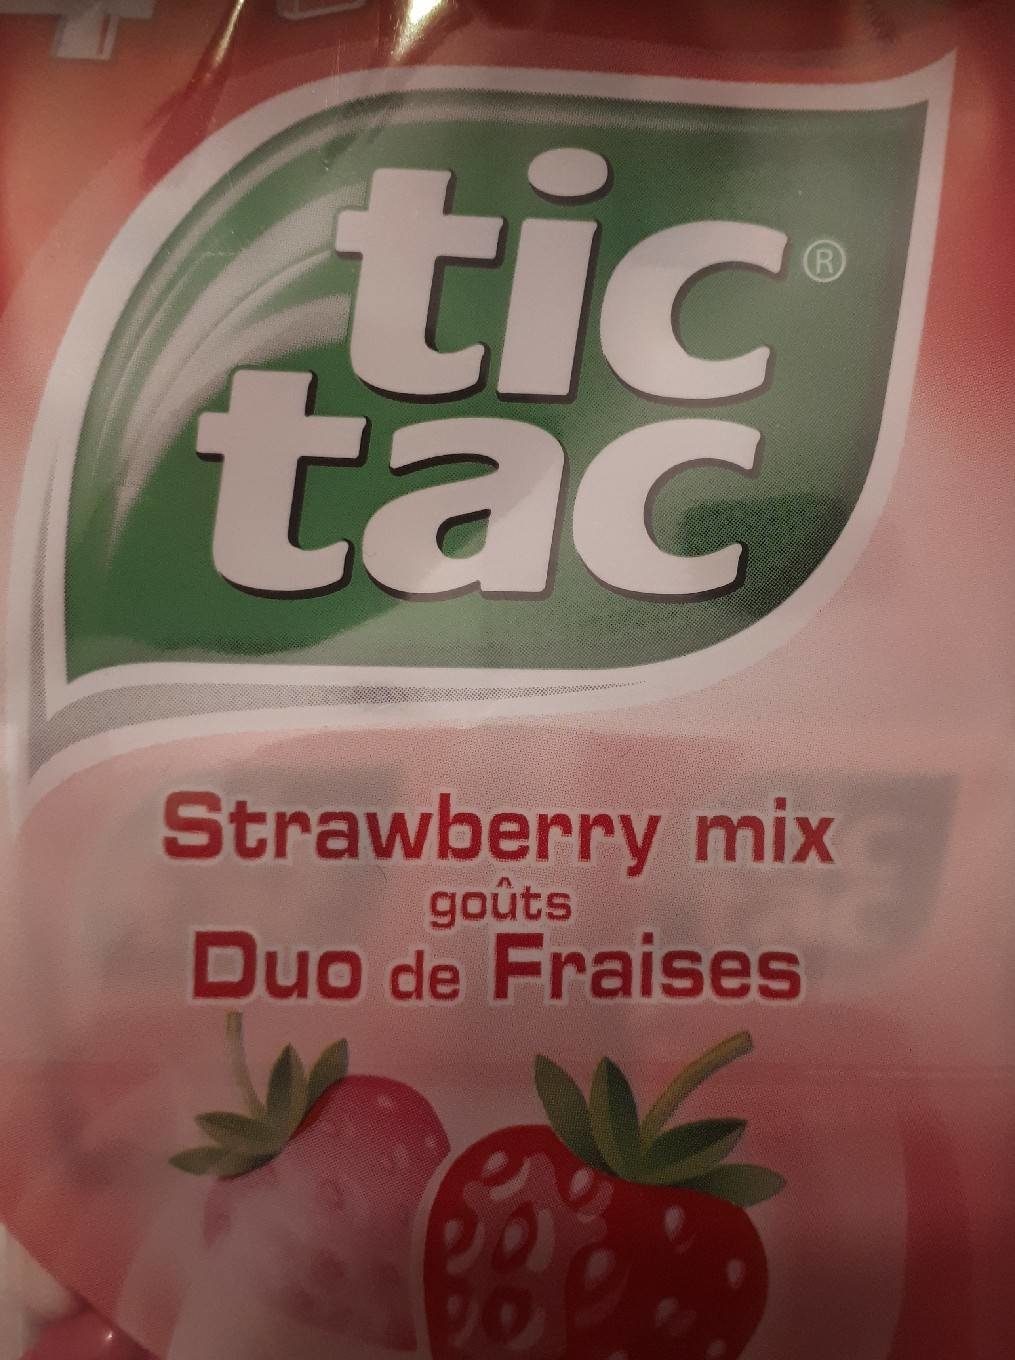 64G Tic Tac Duo Fraises T4 - Tableau nutritionnel